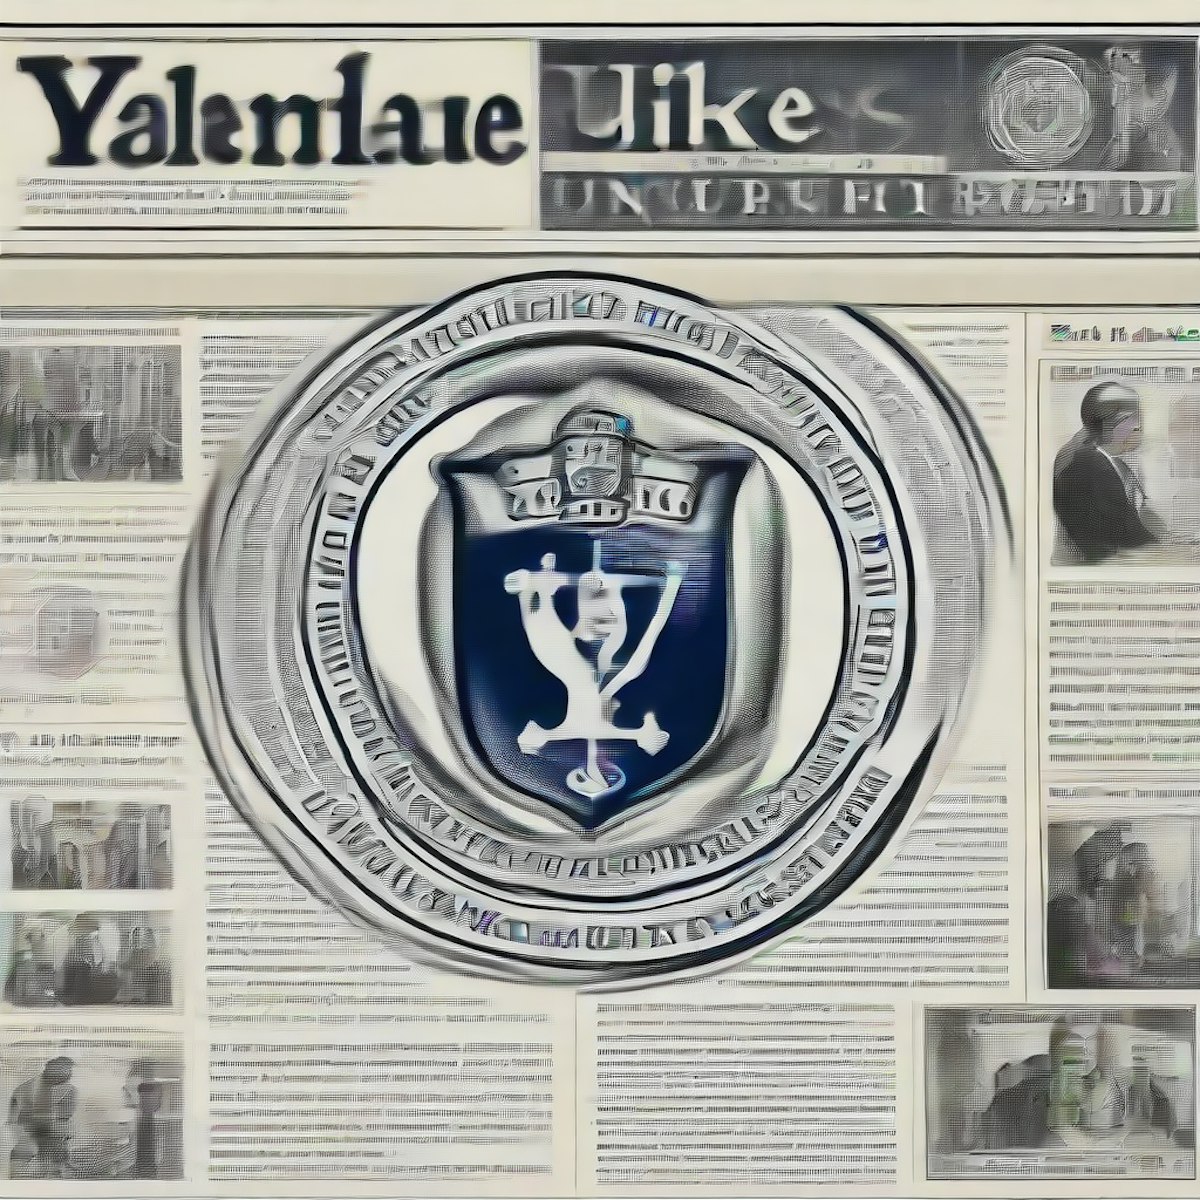 featured image - Quan hệ truyền thông của Yale dành cho doanh nhân với Nhà báo Walter Thompson & Giám đốc điều hành HackerNoon David Smooke